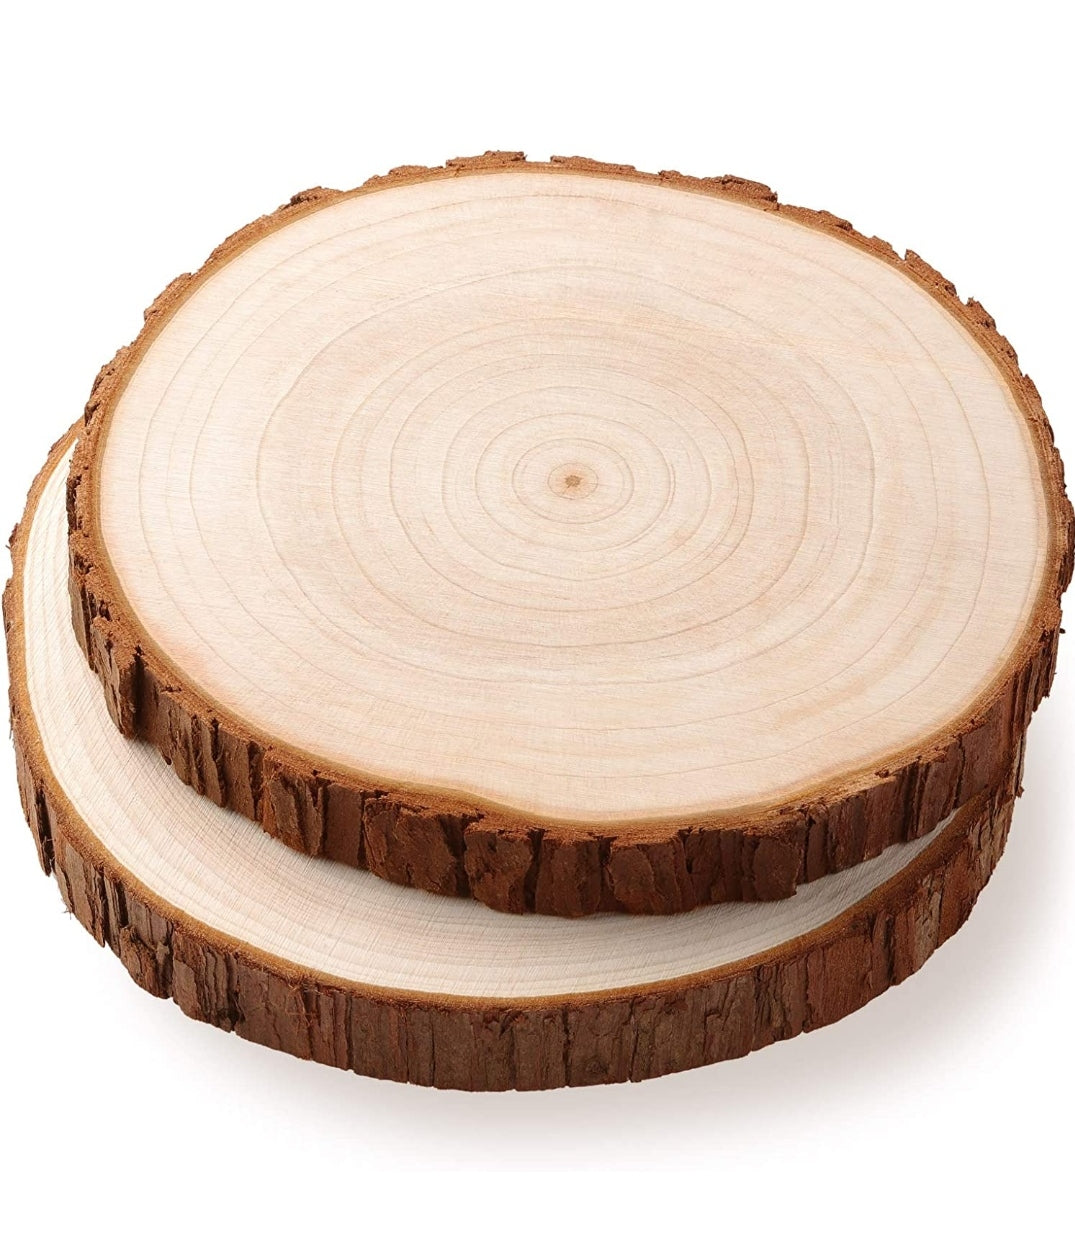 Base legno corteccia 24-25 cm